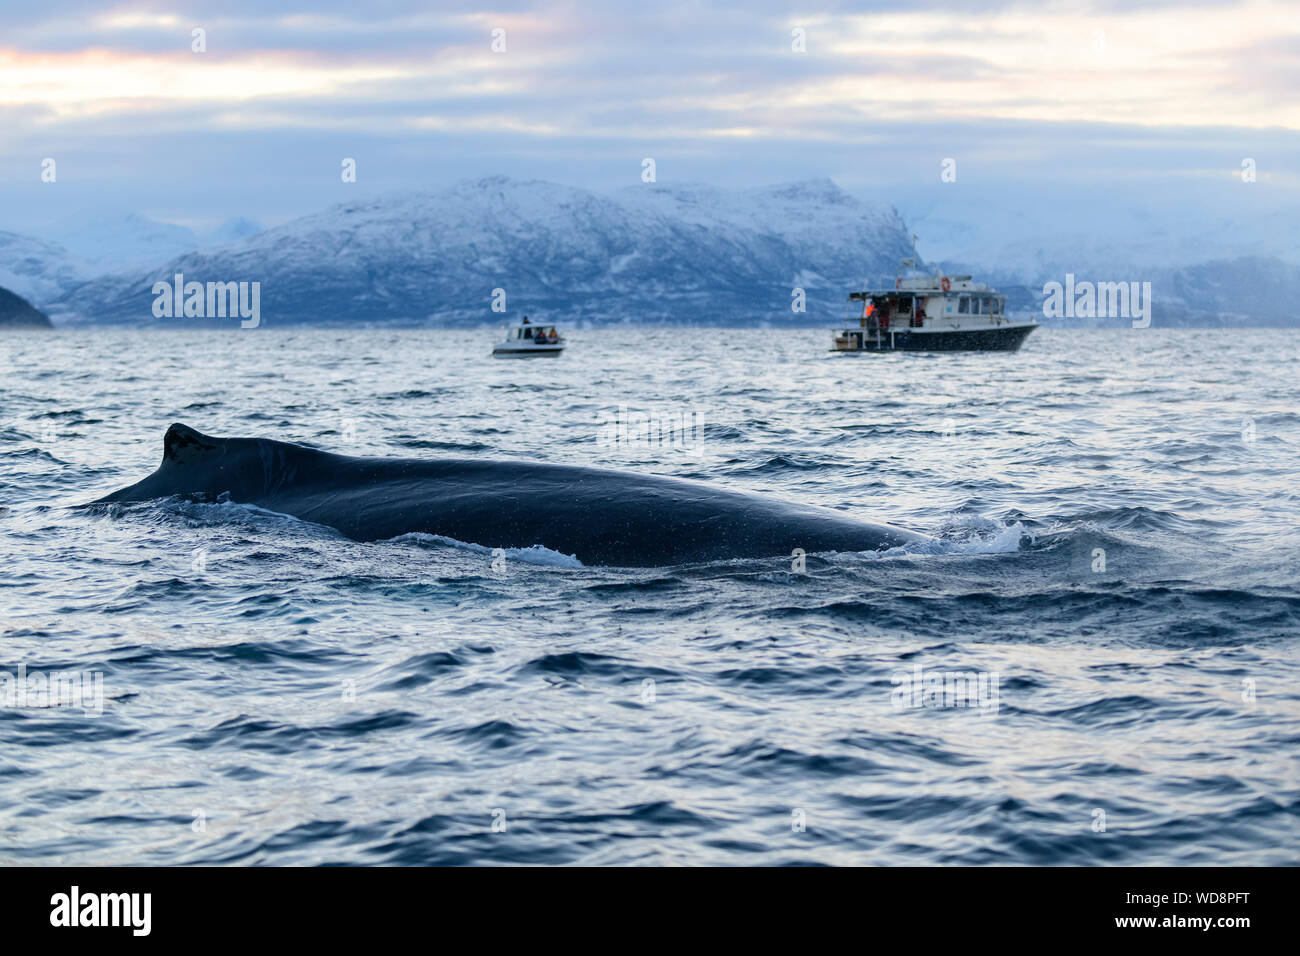 Par l'observation des baleines à bosse, Megaptera novaeangliae Bateau, Kvaloyvagen, la Norvège, l'Océan Atlantique Banque D'Images